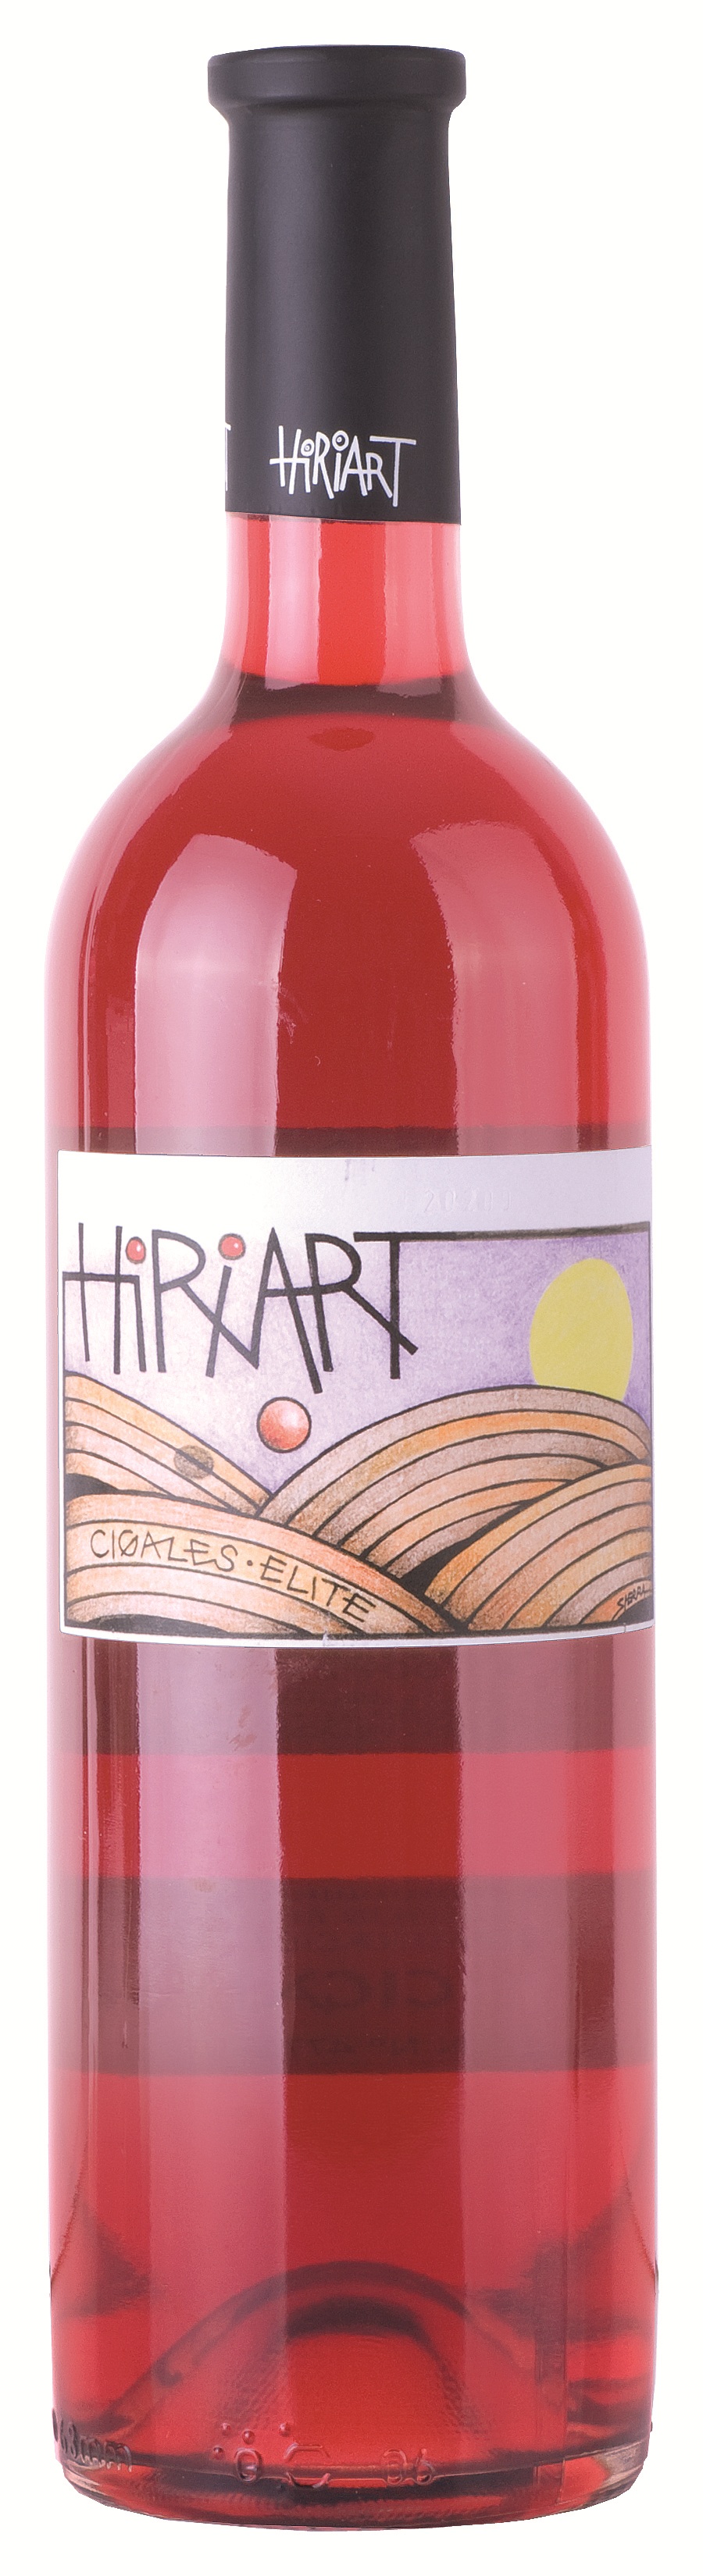 Imagen de la botella de Vino Hiriart Rosado Élite